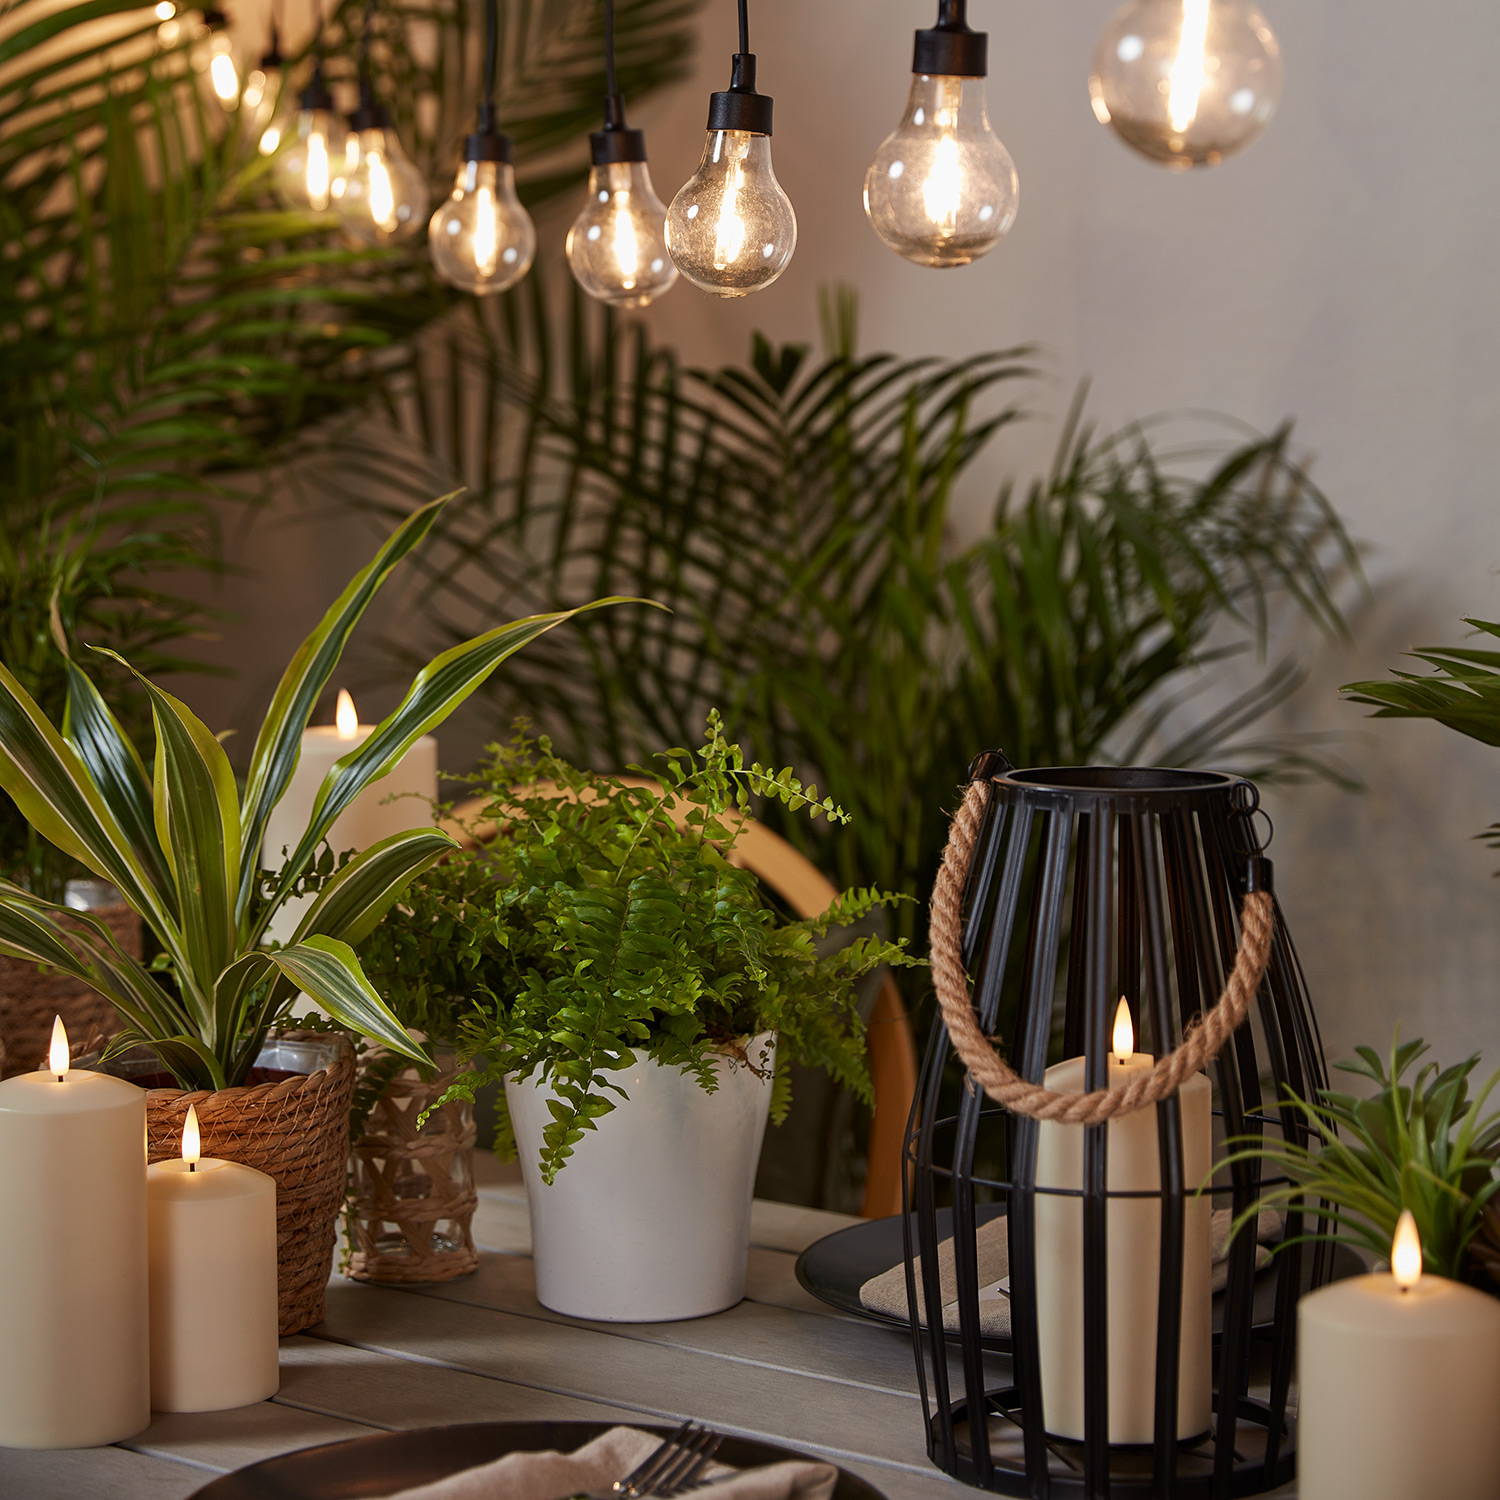 Une sélection de lanternes et bougies d'extérieur posée sur une table et une guirlande guinguette de style vintage suspendue en hauteur. 